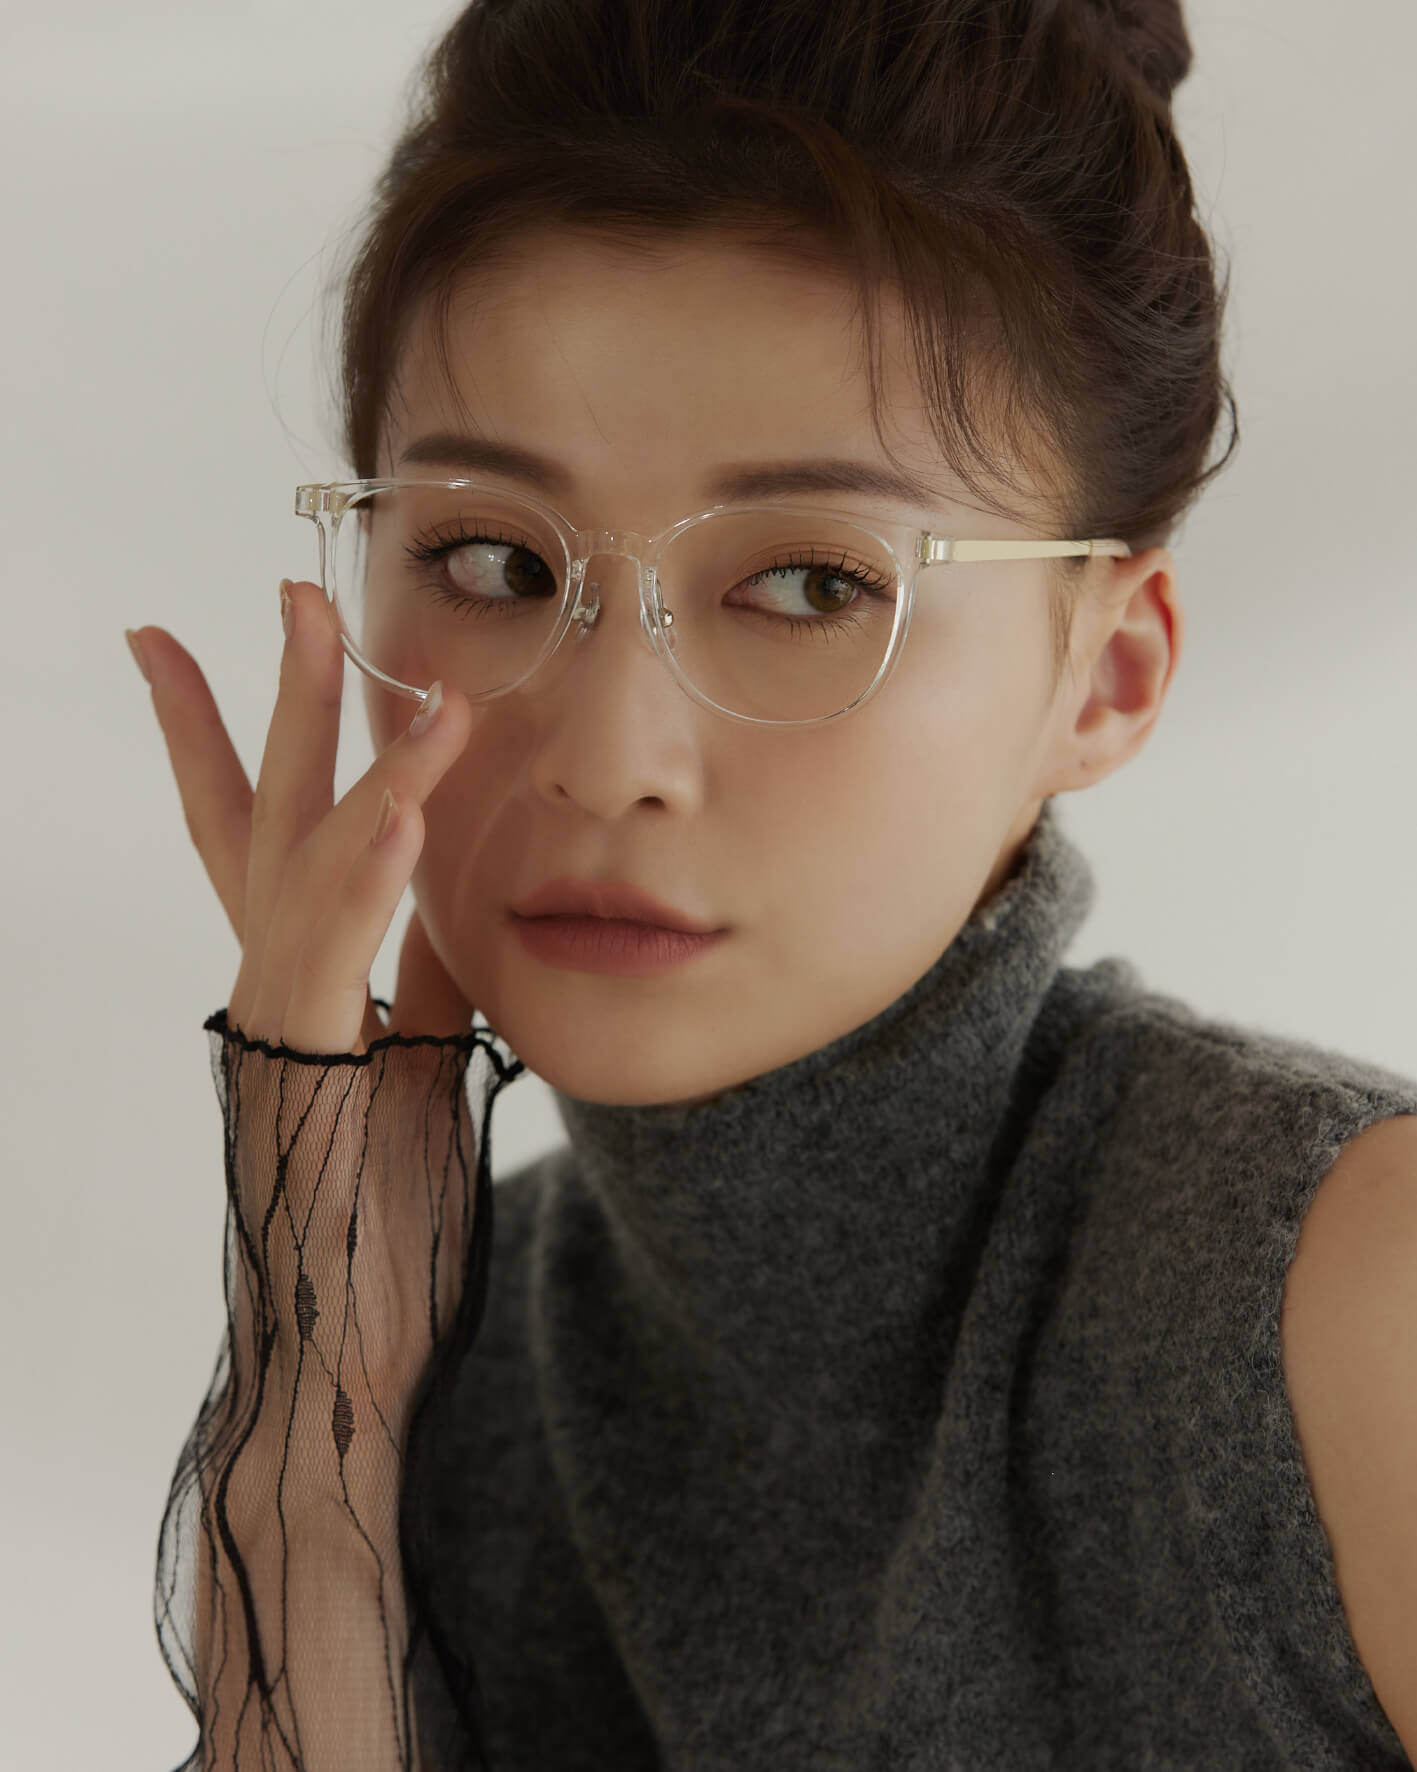 韓國平光眼鏡,韓國透明框眼鏡